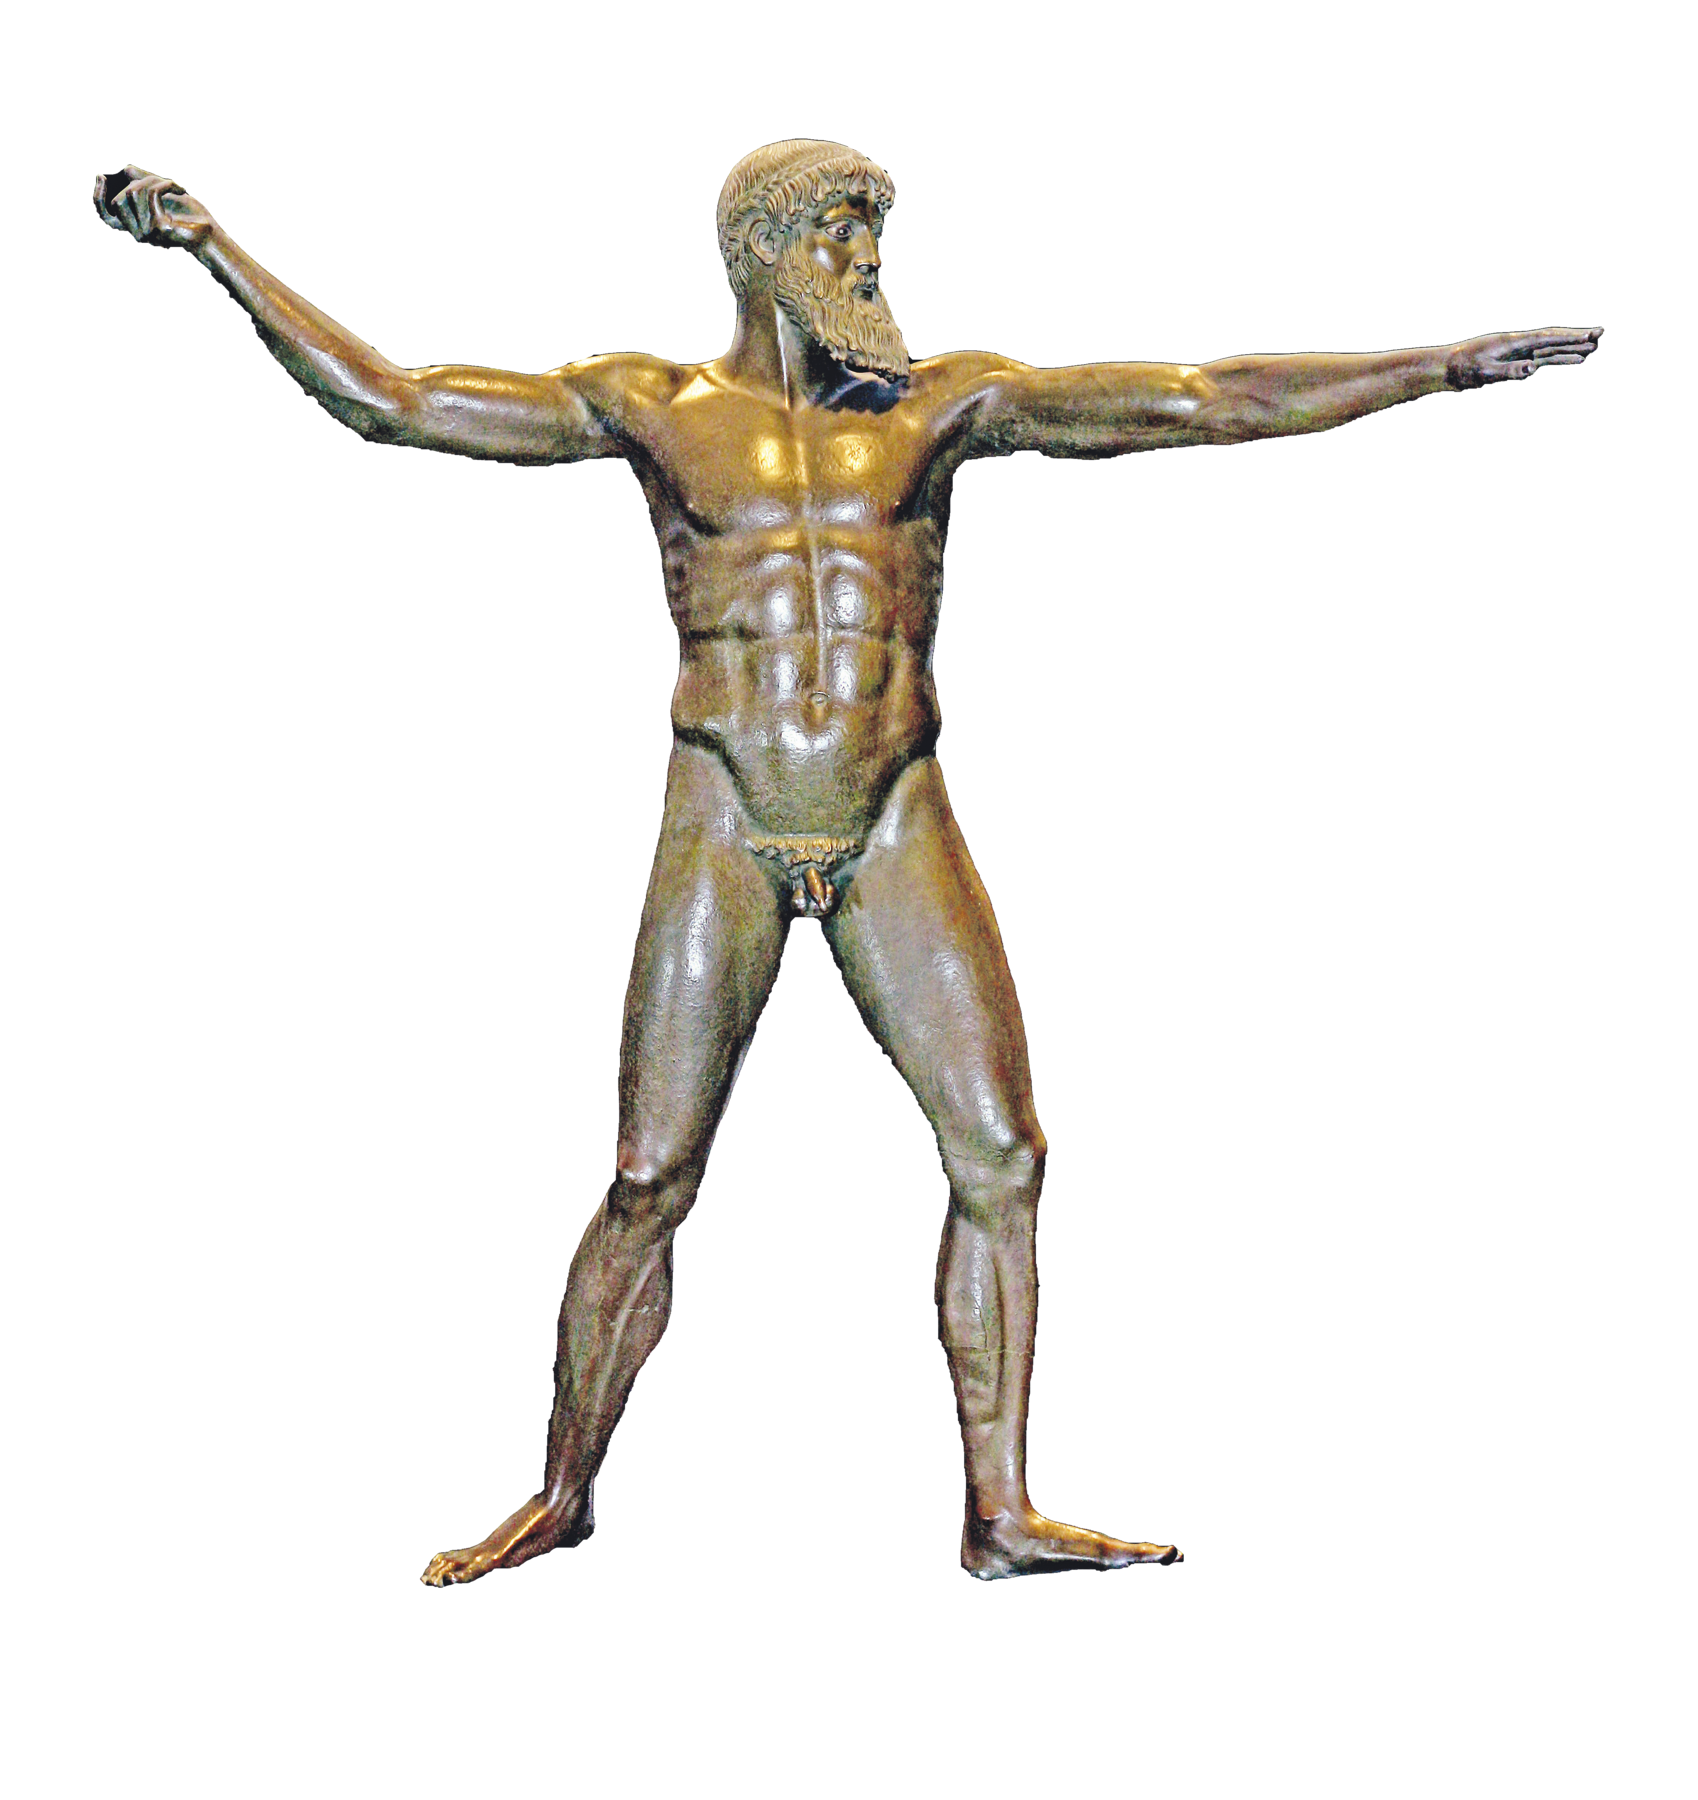 Escultura. Homem com músculos definidos e corpo desnudo, cabelos cacheados curtos e uma barba volumosa. Está em pé, com as pernas afastadas e os braços em direções contrárias, esticados para as laterais.